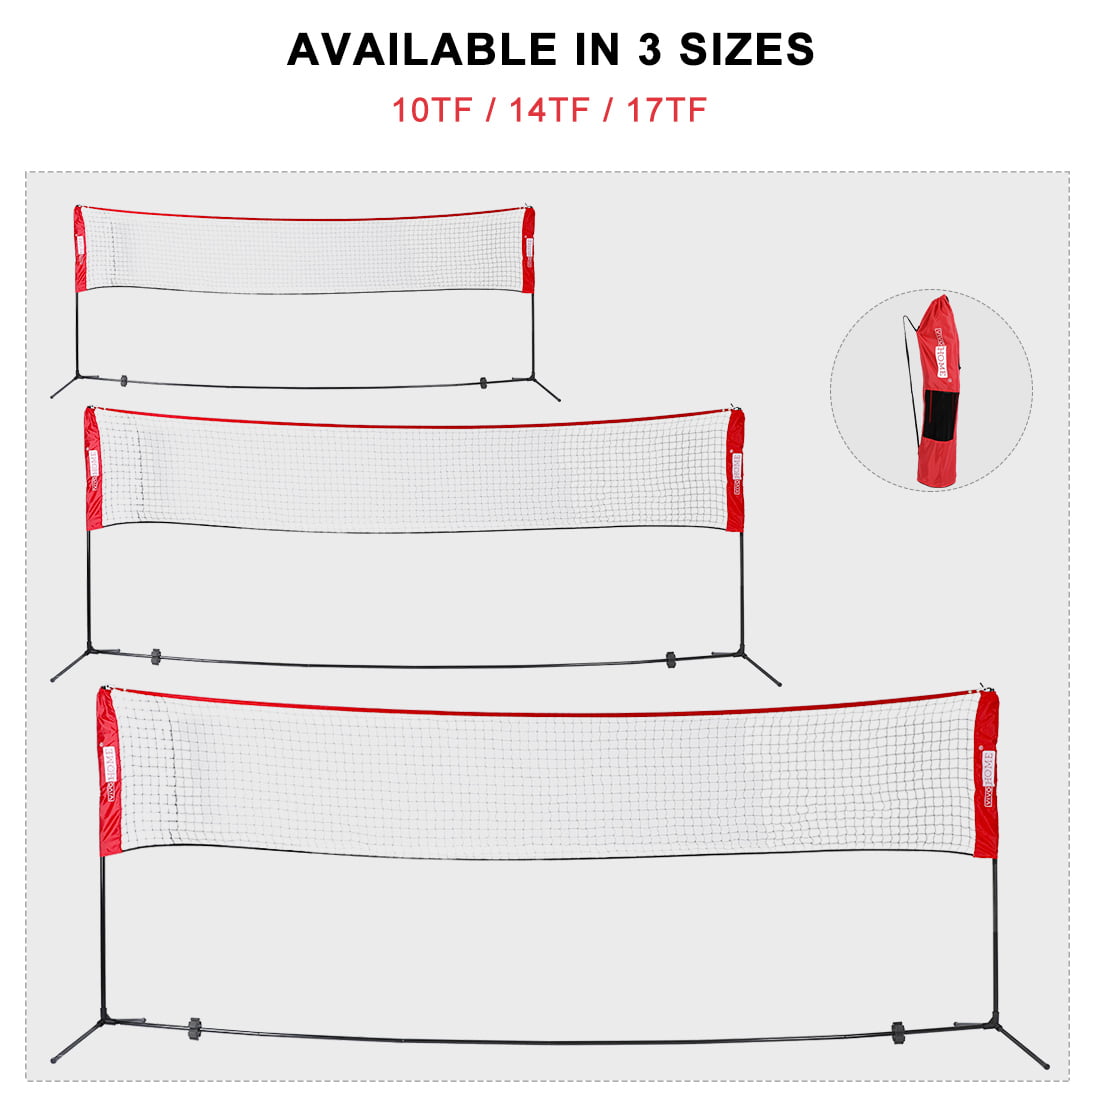 TOPQSC Badminton net Volleyball Net Tennis Net Adjustable in Standard Height for Indoor or Outdoor Sports Lightweight Foldable Outdoor Sports for Adults Children 